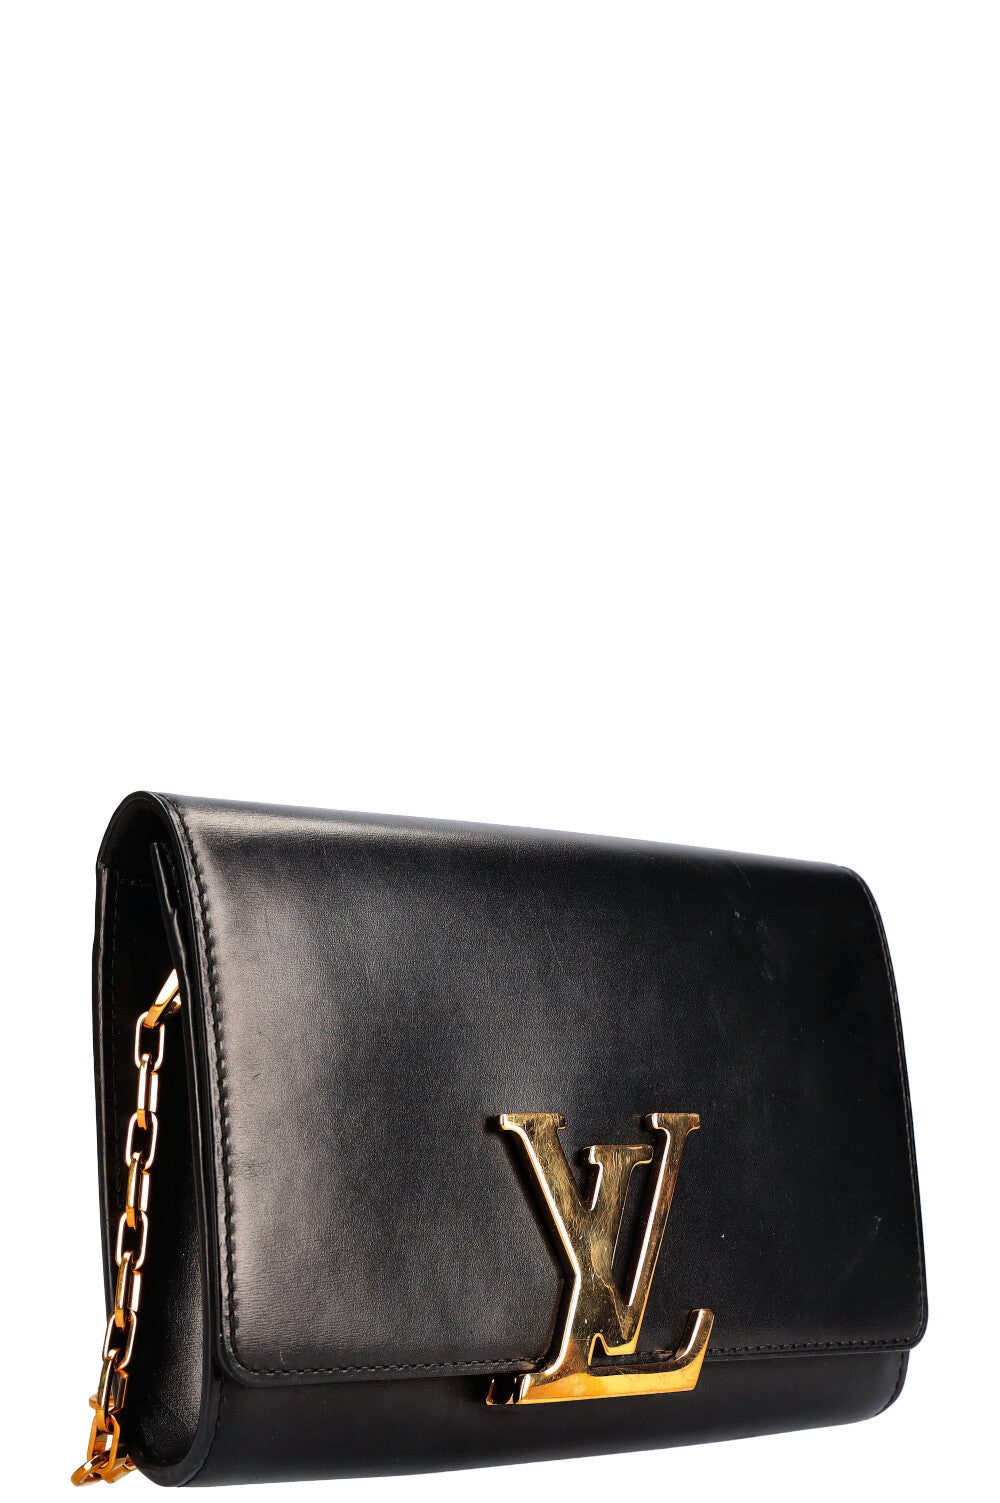 Kỳ lạ túi xách Louis Vuitton nhỏ bằng mắt muỗi, xuyên qua được